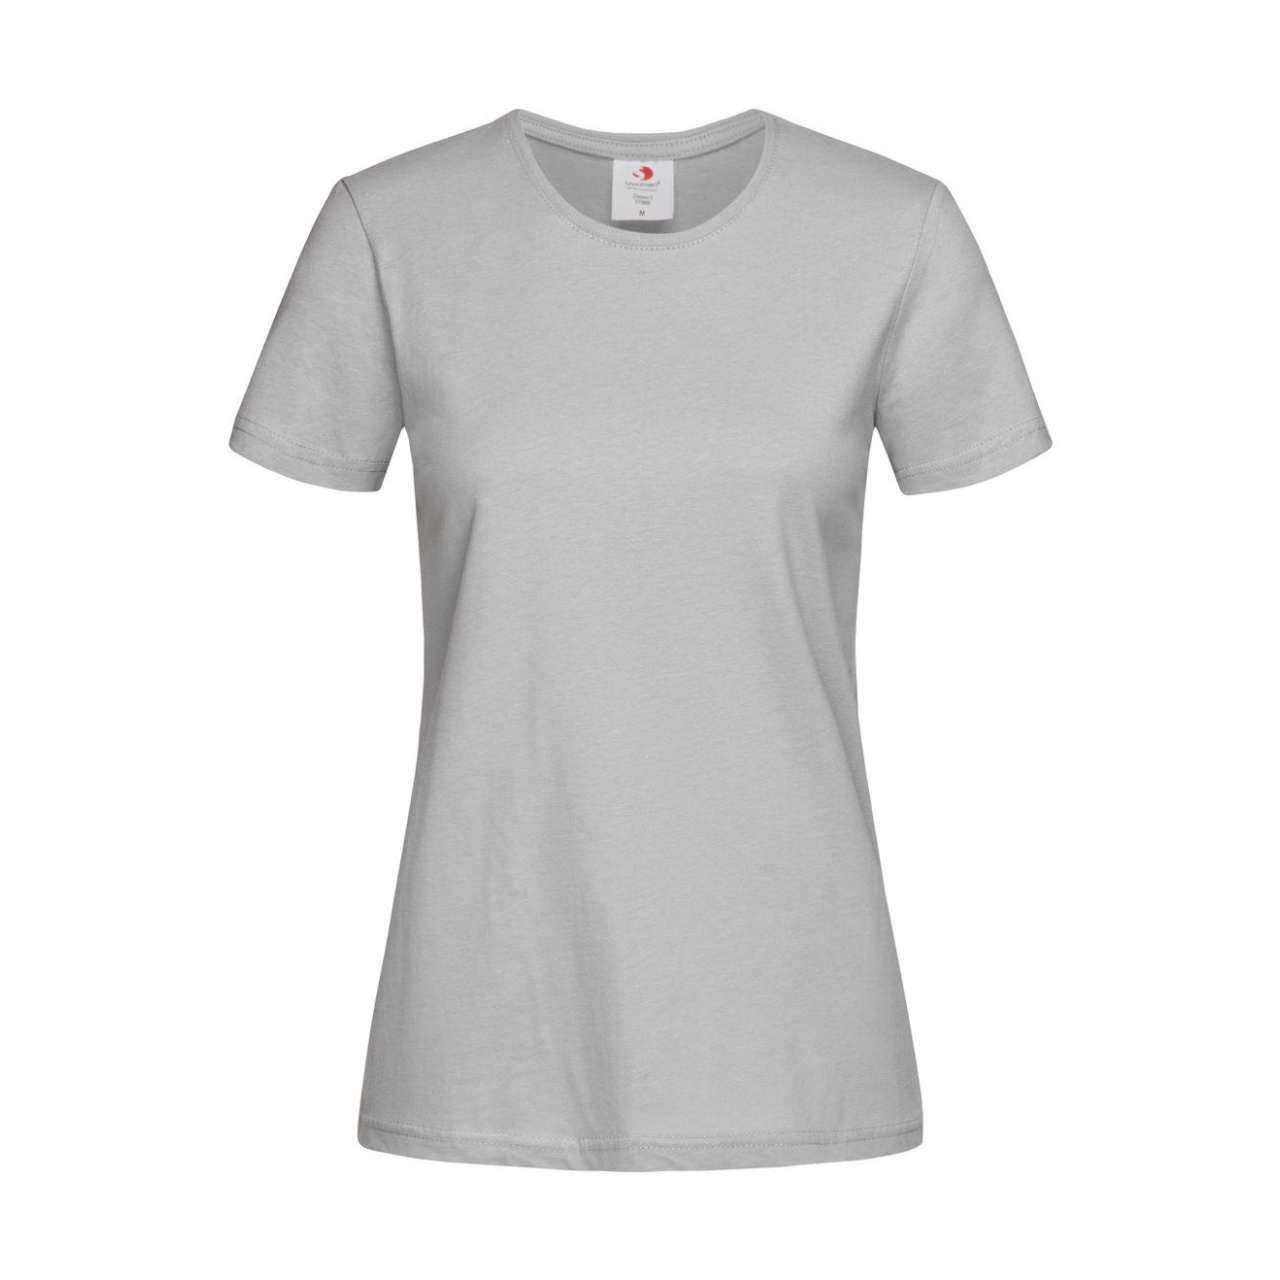 Tričko dámské Stedman Fitted s kulatým výstřihem - světle šedé, XL